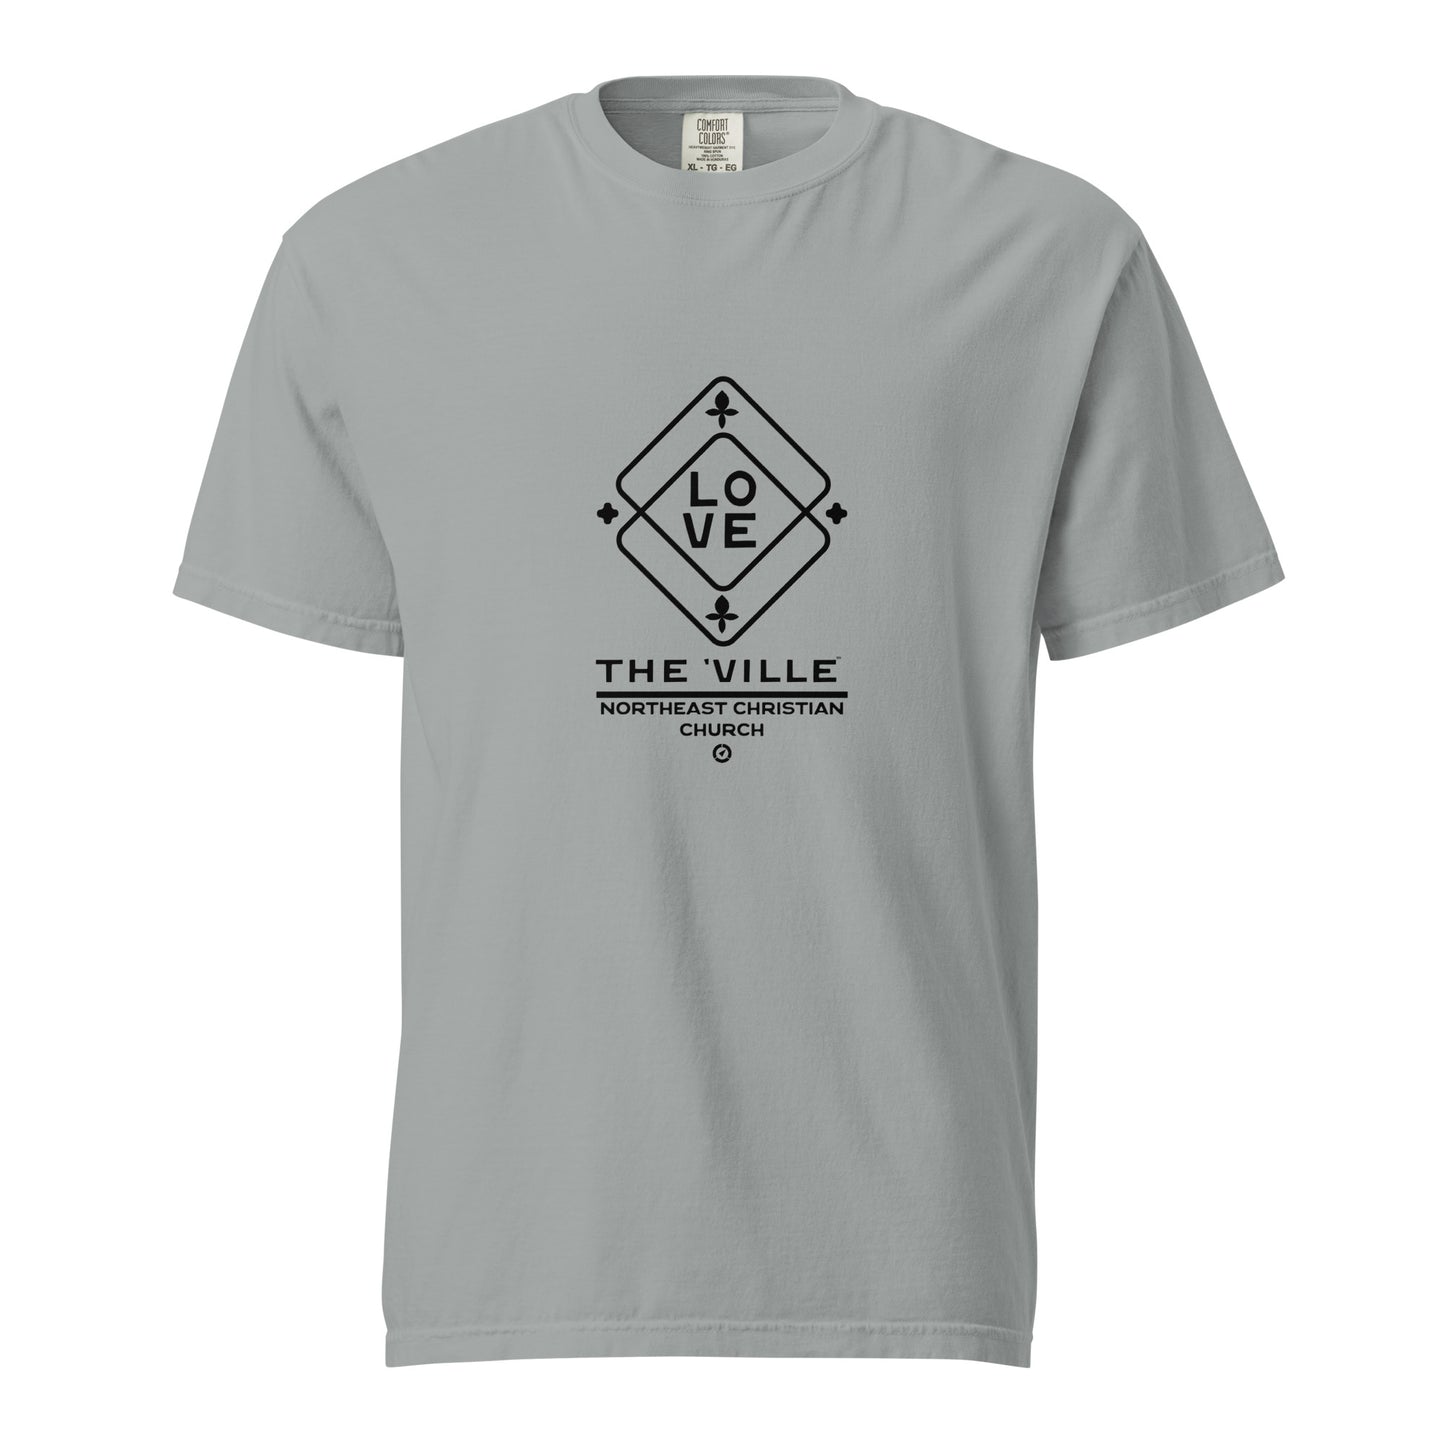 The 'Ville T-Shirt Black Edition - Comfort Colors